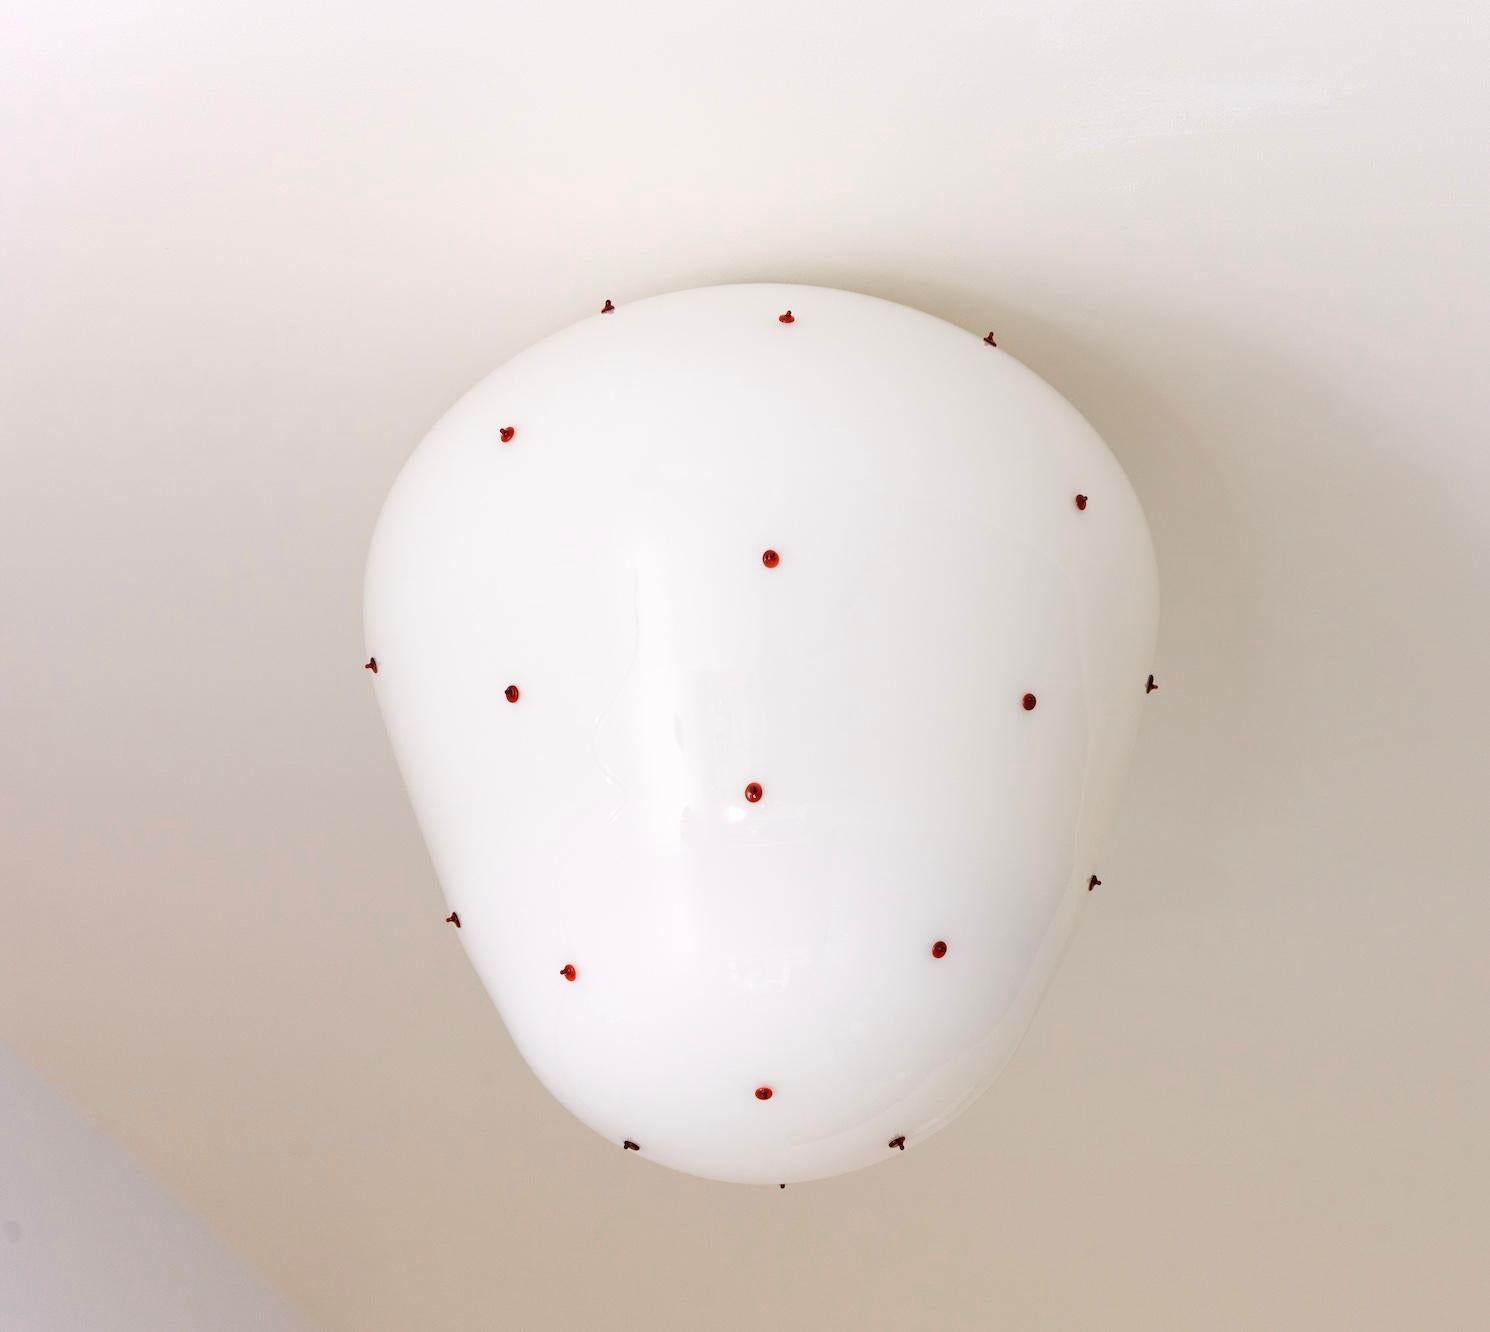 Wandleuchte aus mundgeblasenem Beerenglas, entworfen vom französischen Designerduo Marie & Alexandre.

Die Collection'S Berries wird in Paris von einem Glasbläsermeister in geduldiger Handarbeit ohne Formen mundgeblasen.
Dieser sorgfältige Prozess